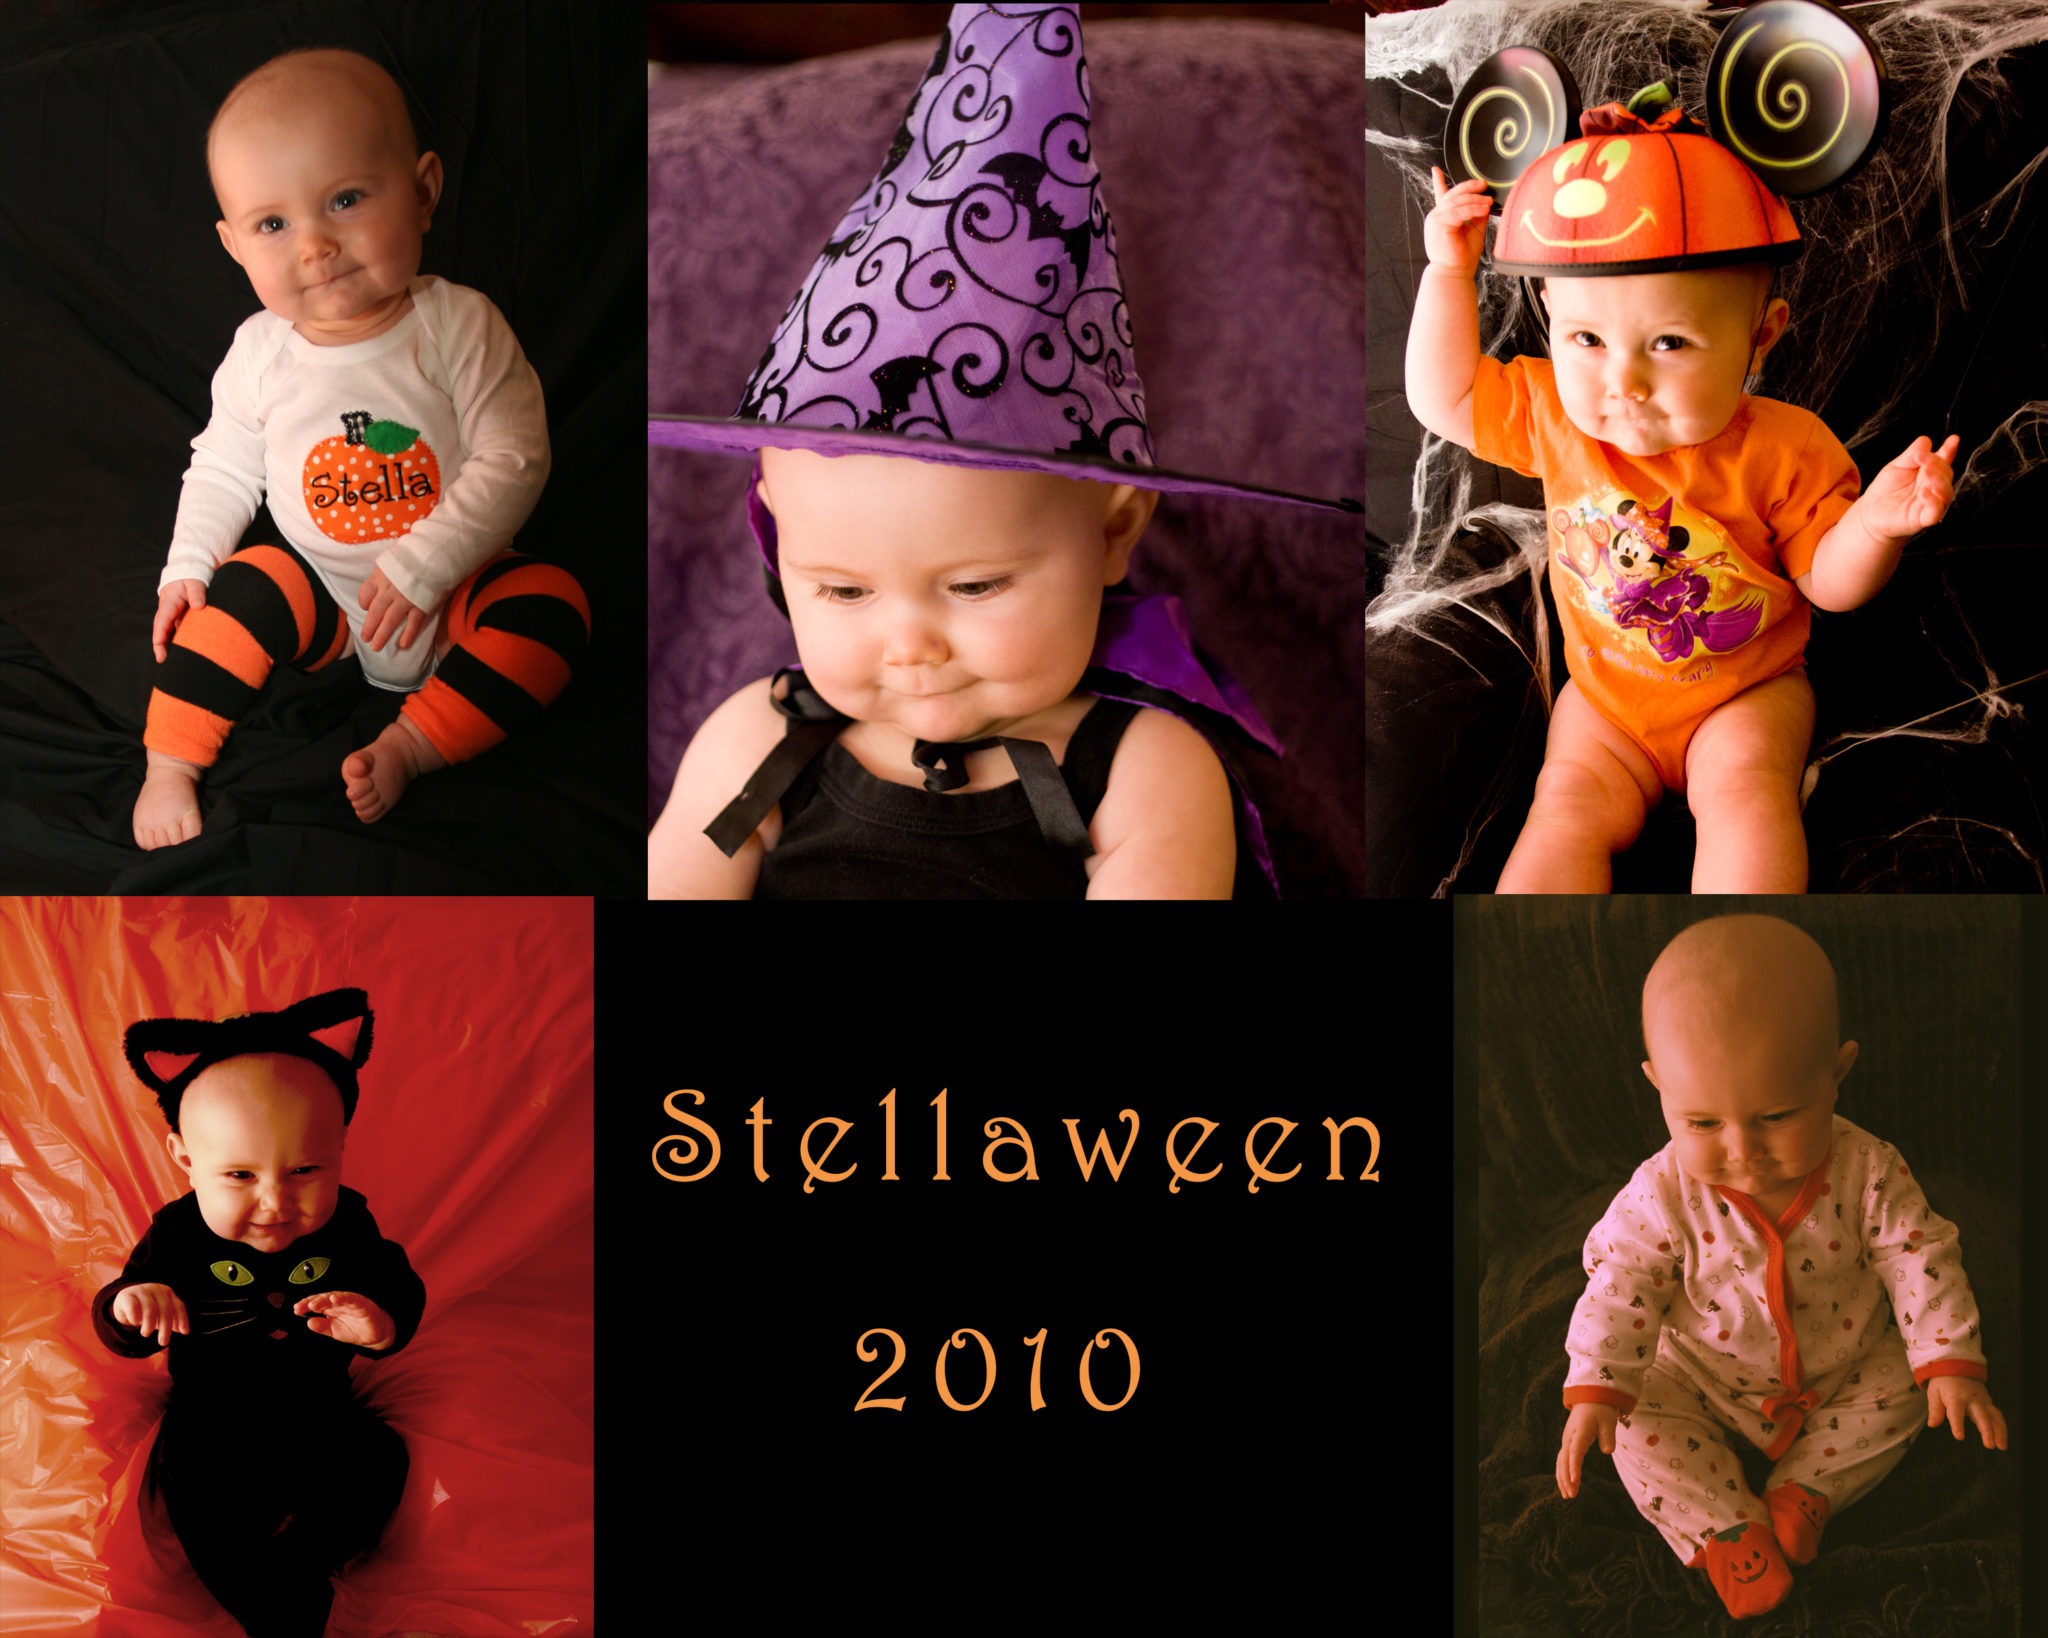 week-1-stellaween-2010